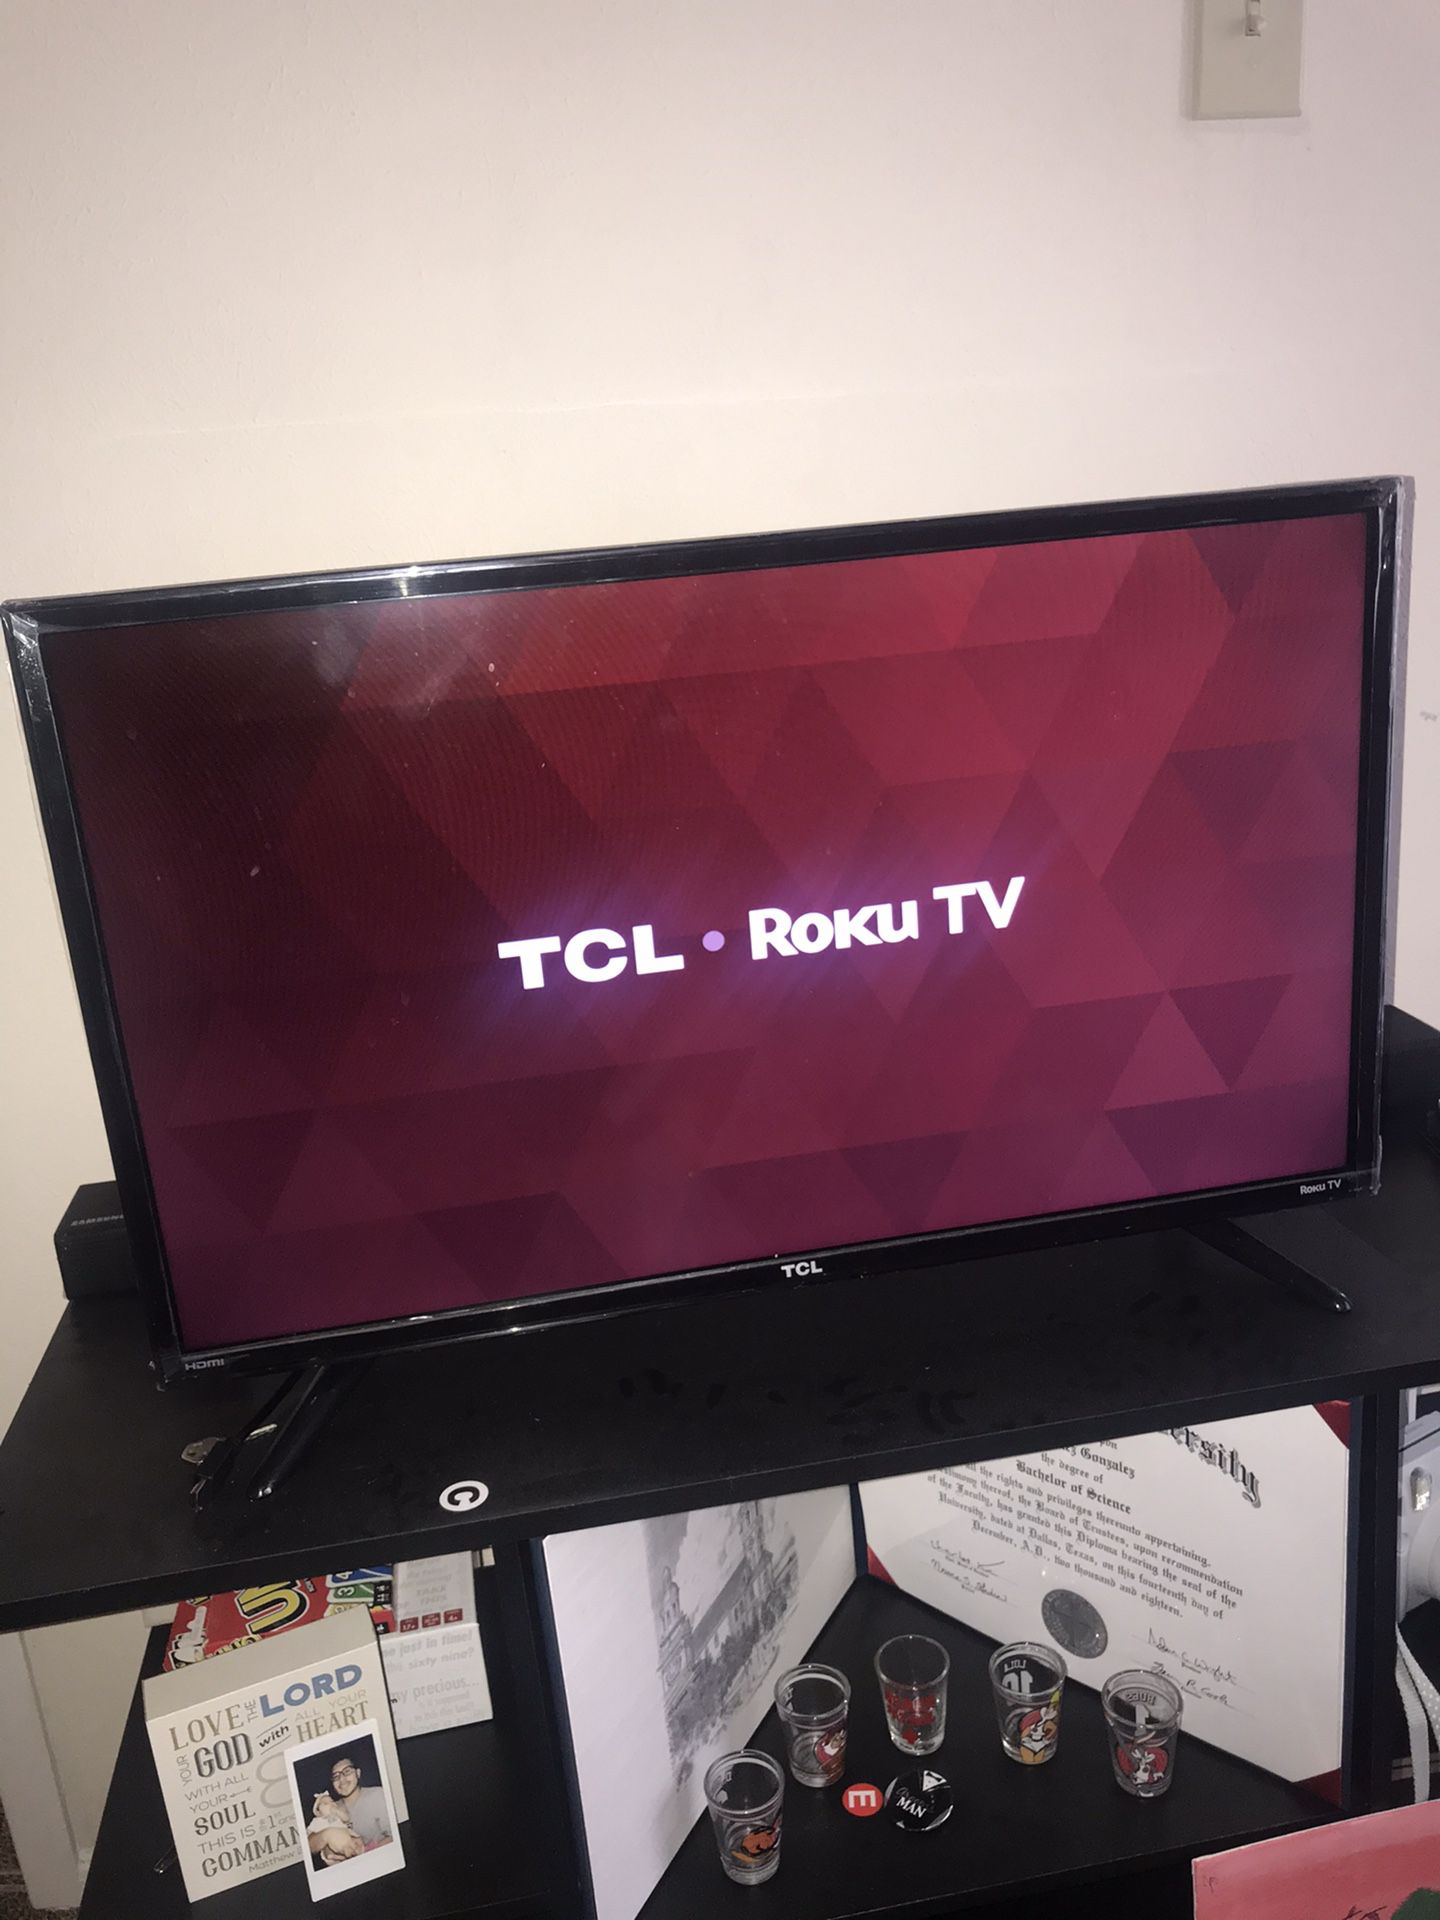 32” TCL Roku TV